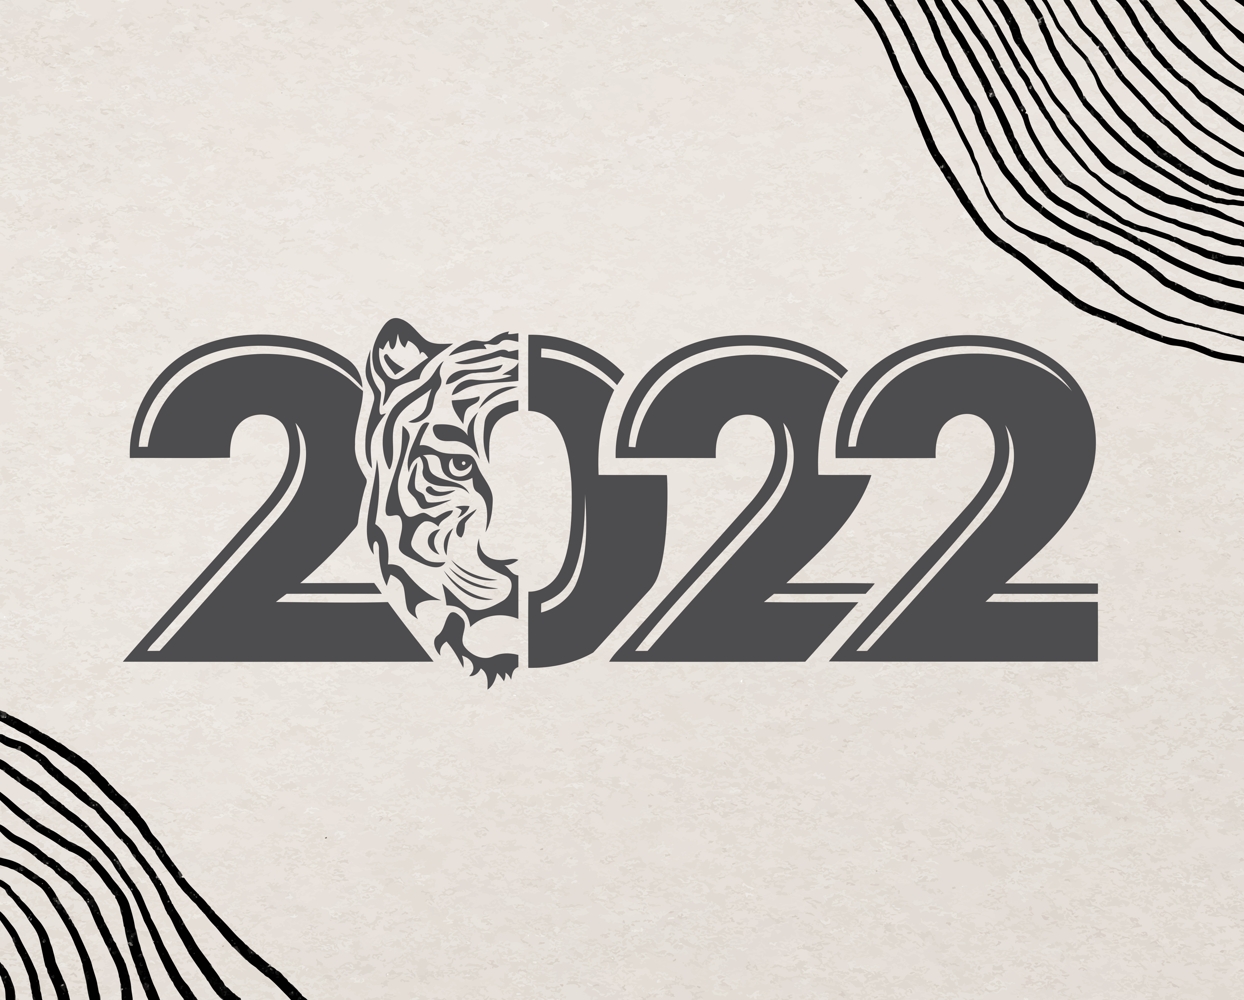 قص ليزر حفر عام النمر 2022